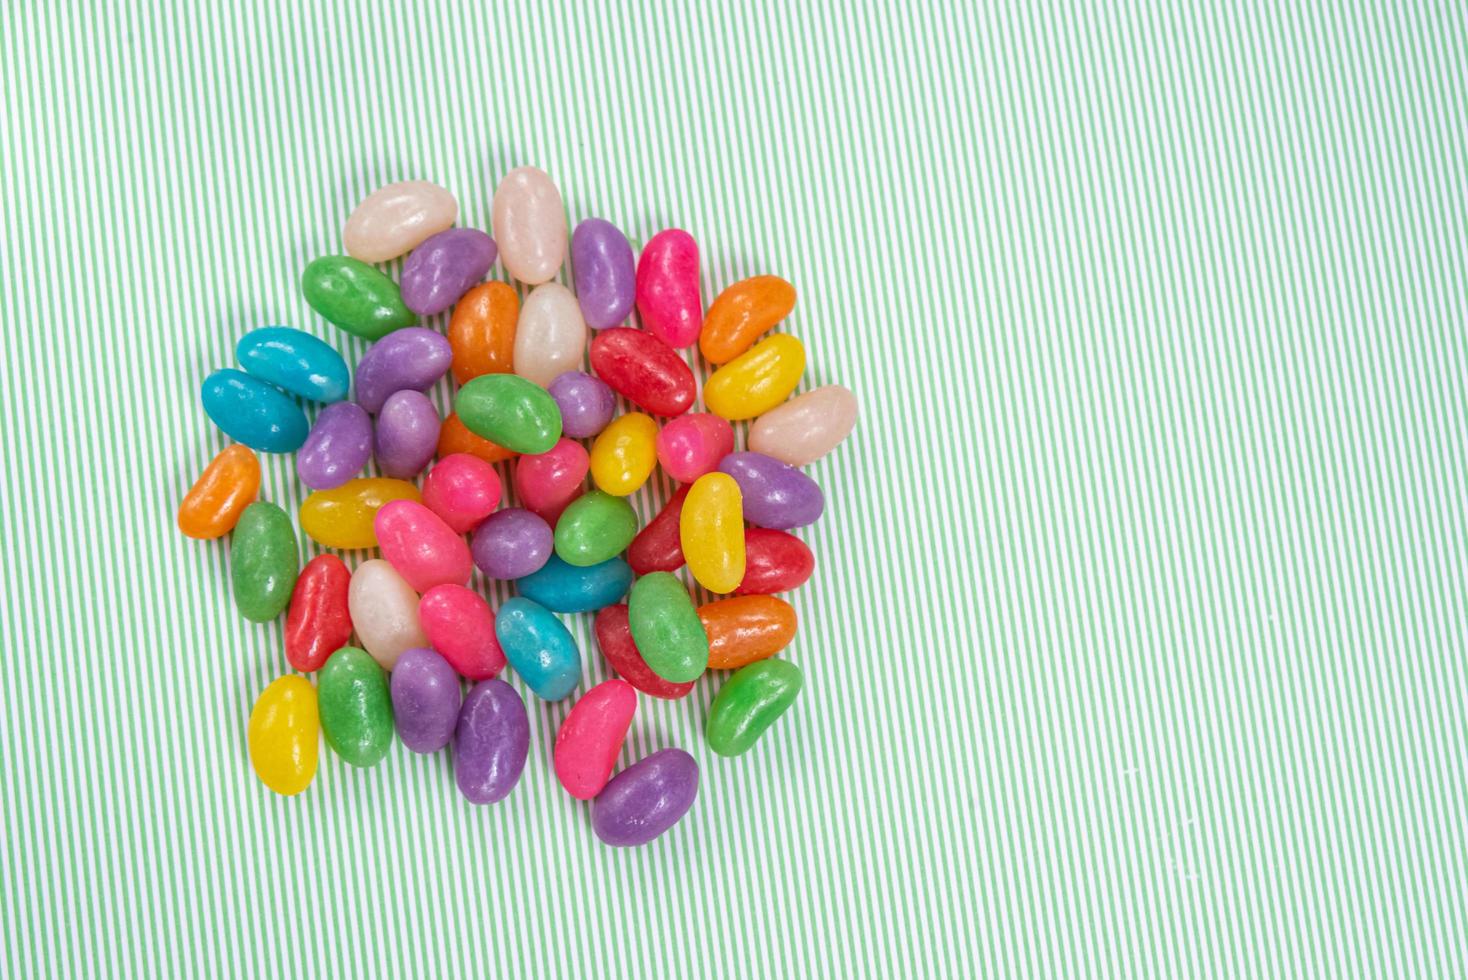 verschillende jelly beans over groen gestreepte achtergrond met wit foto